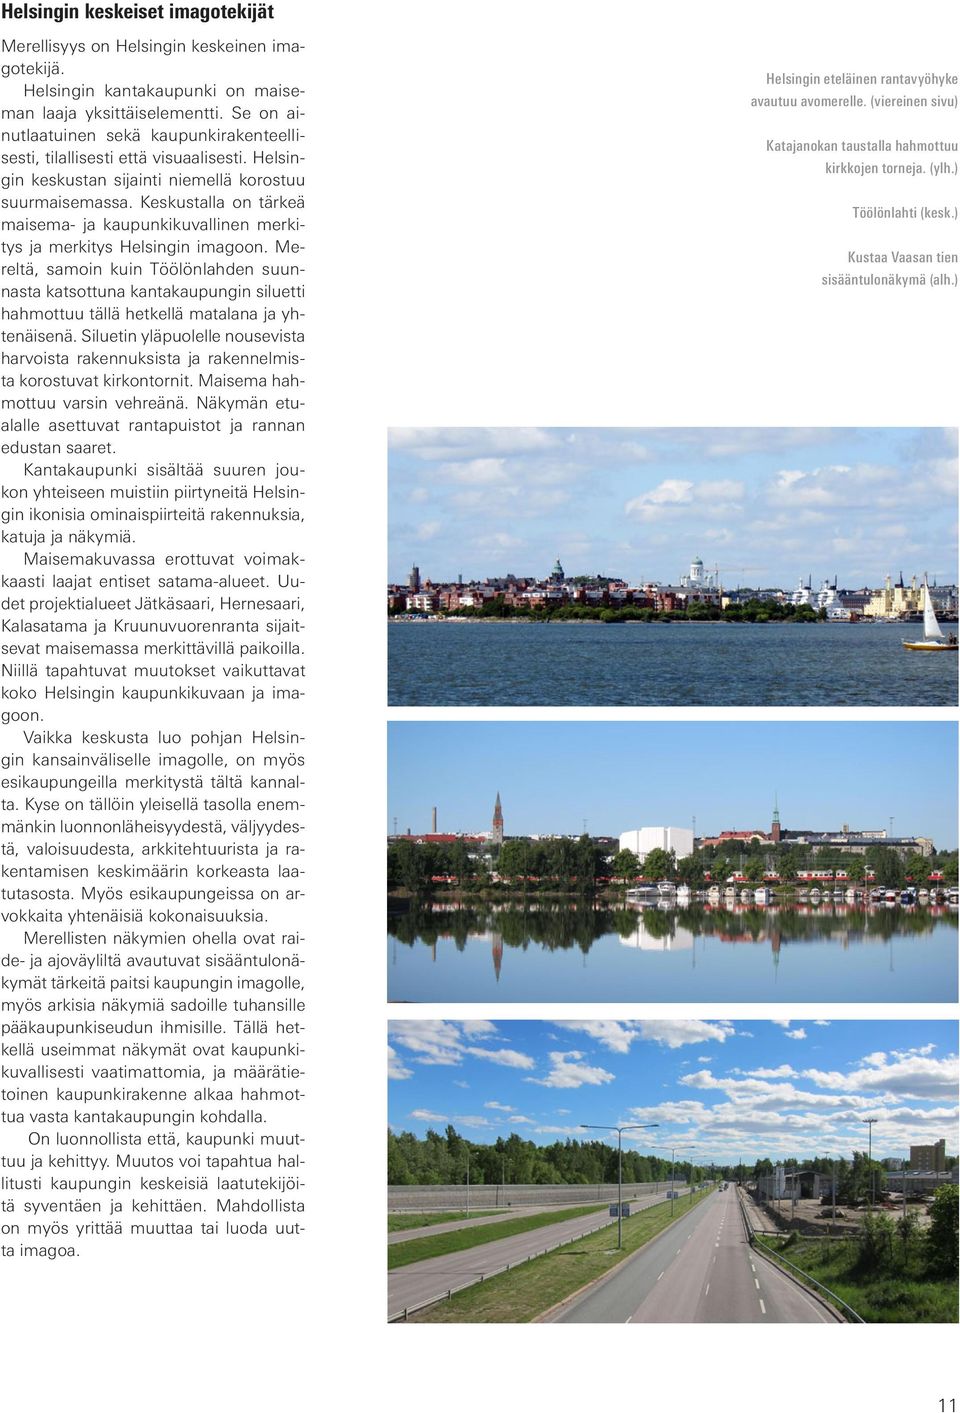 Keskustalla on tärkeä maisema- ja kaupunkikuvallinen merkitys ja merkitys Helsingin imagoon.